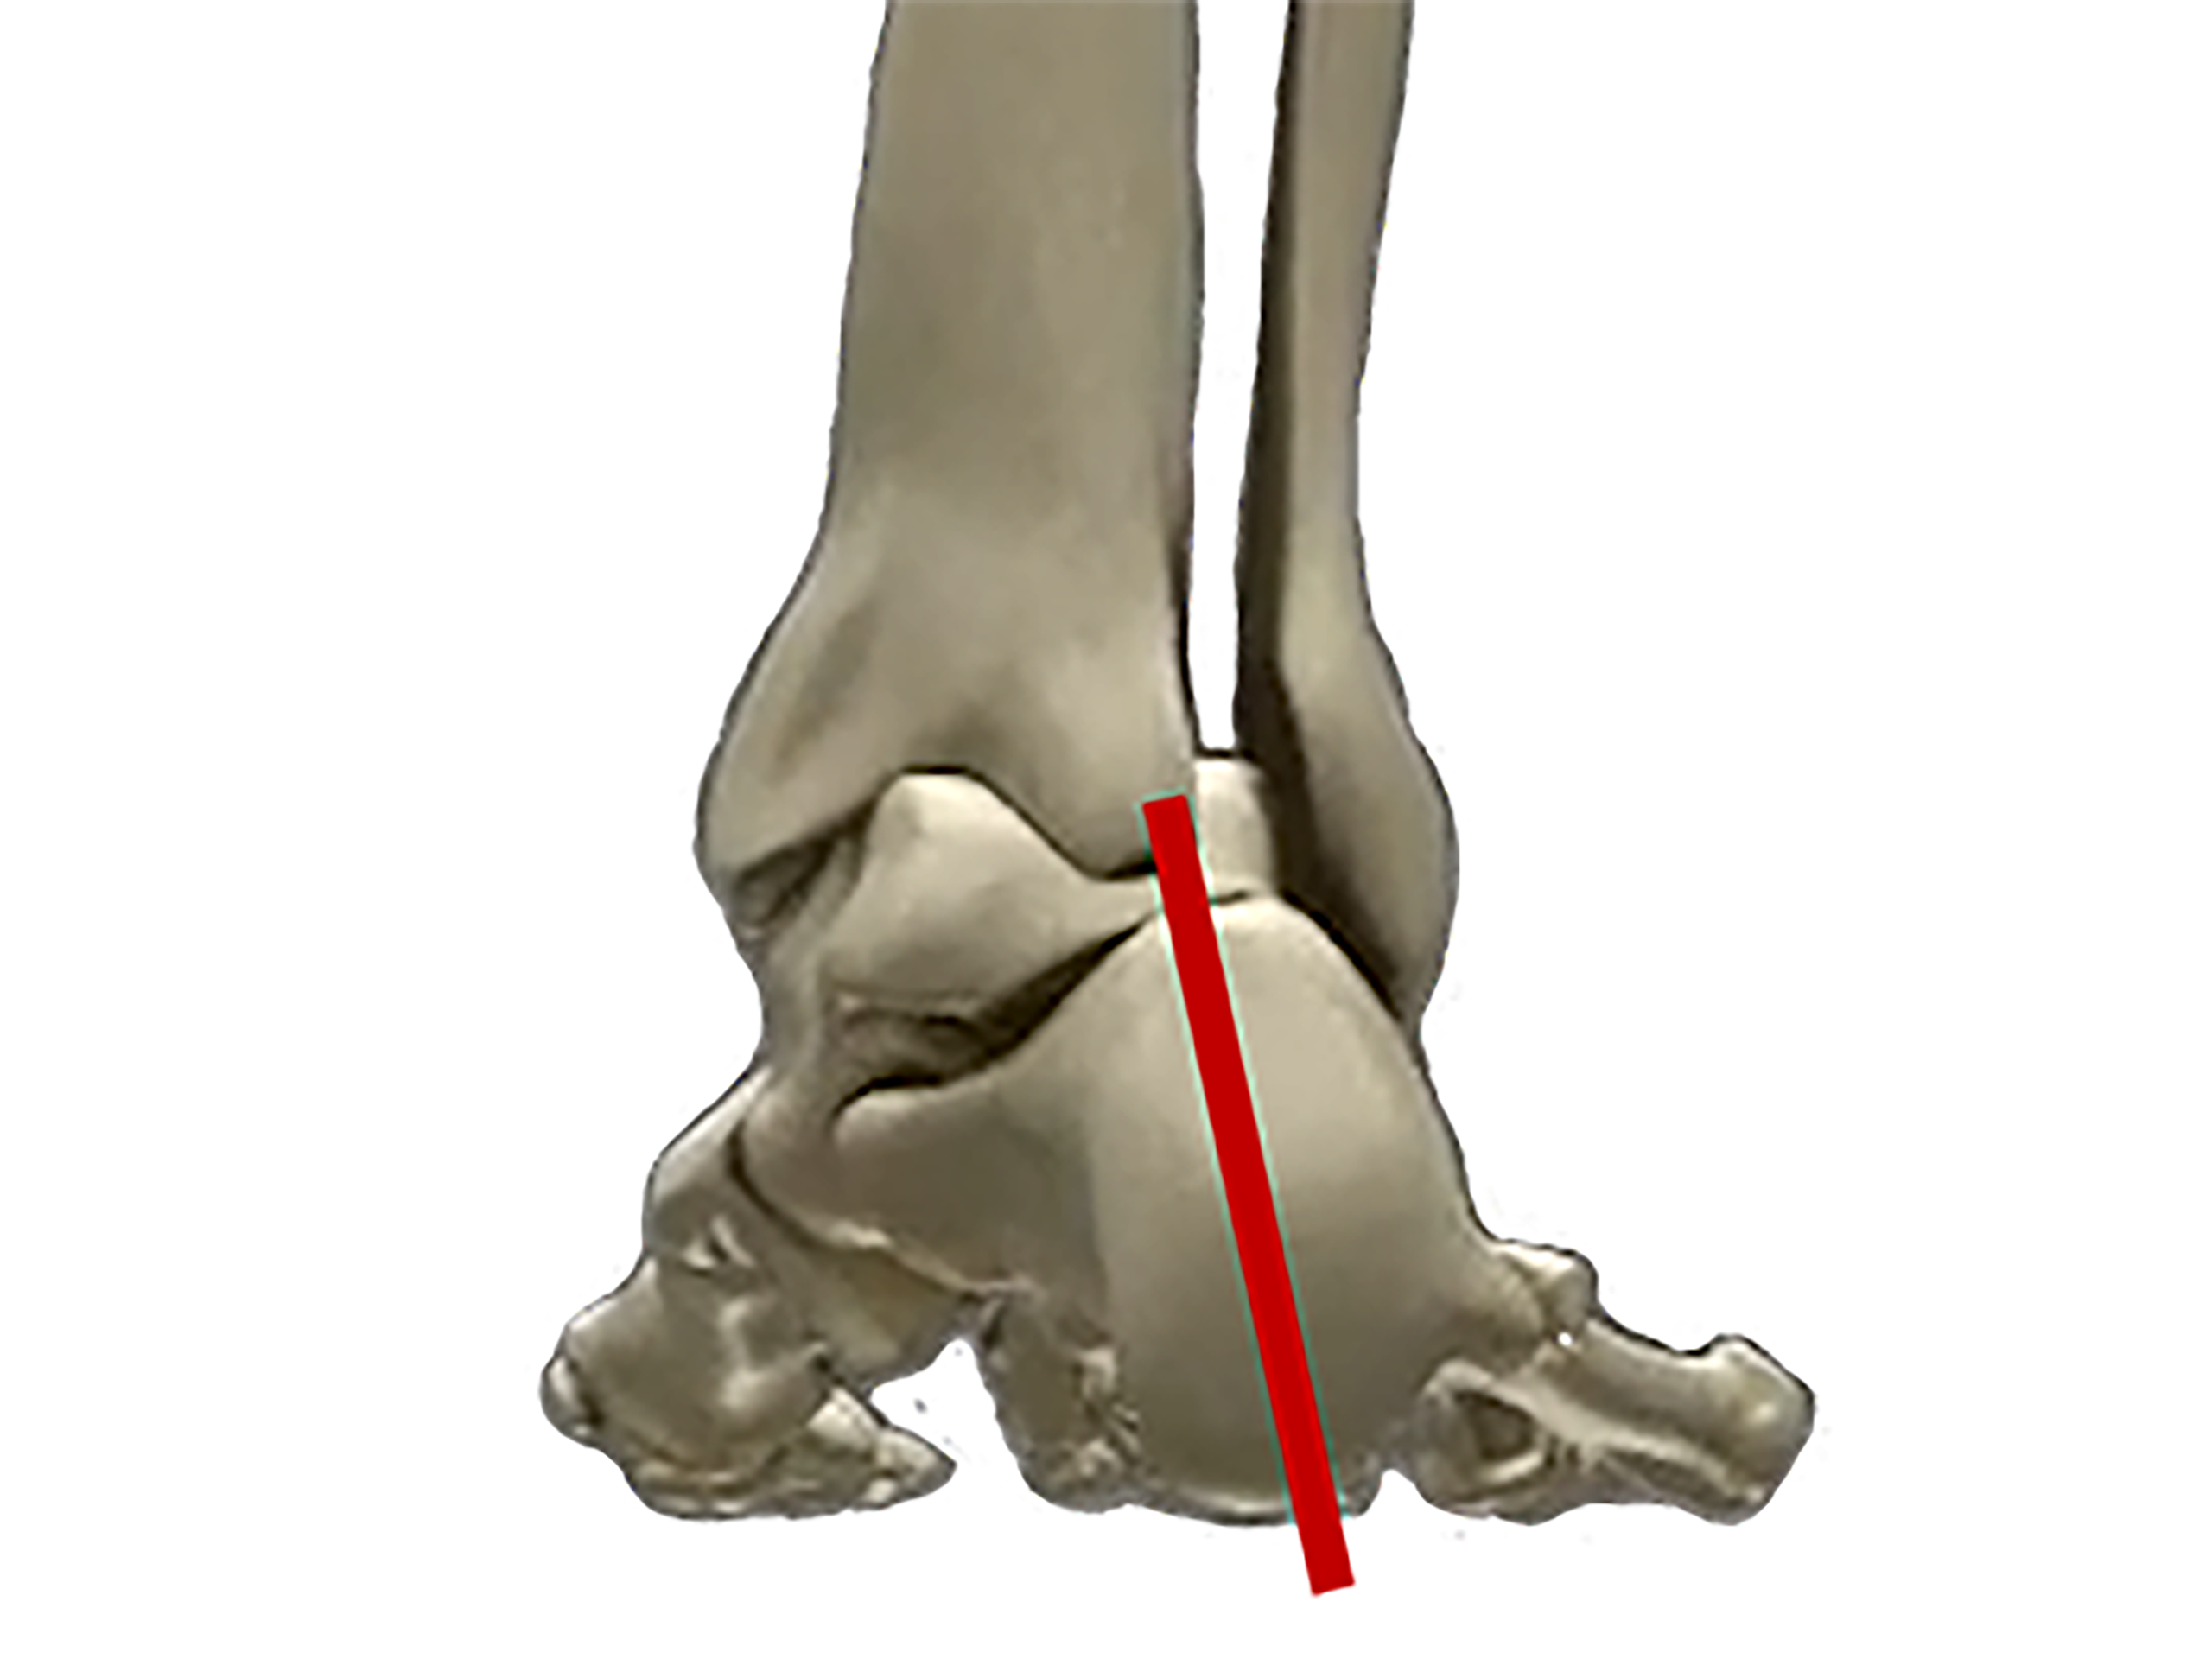 右足のかかと周りの骨の図
足の悩み何ですか？
過剰回内
オーバープロネーション
NWPL社のファクショナルオーソティックス®およびファンクショナルインソール